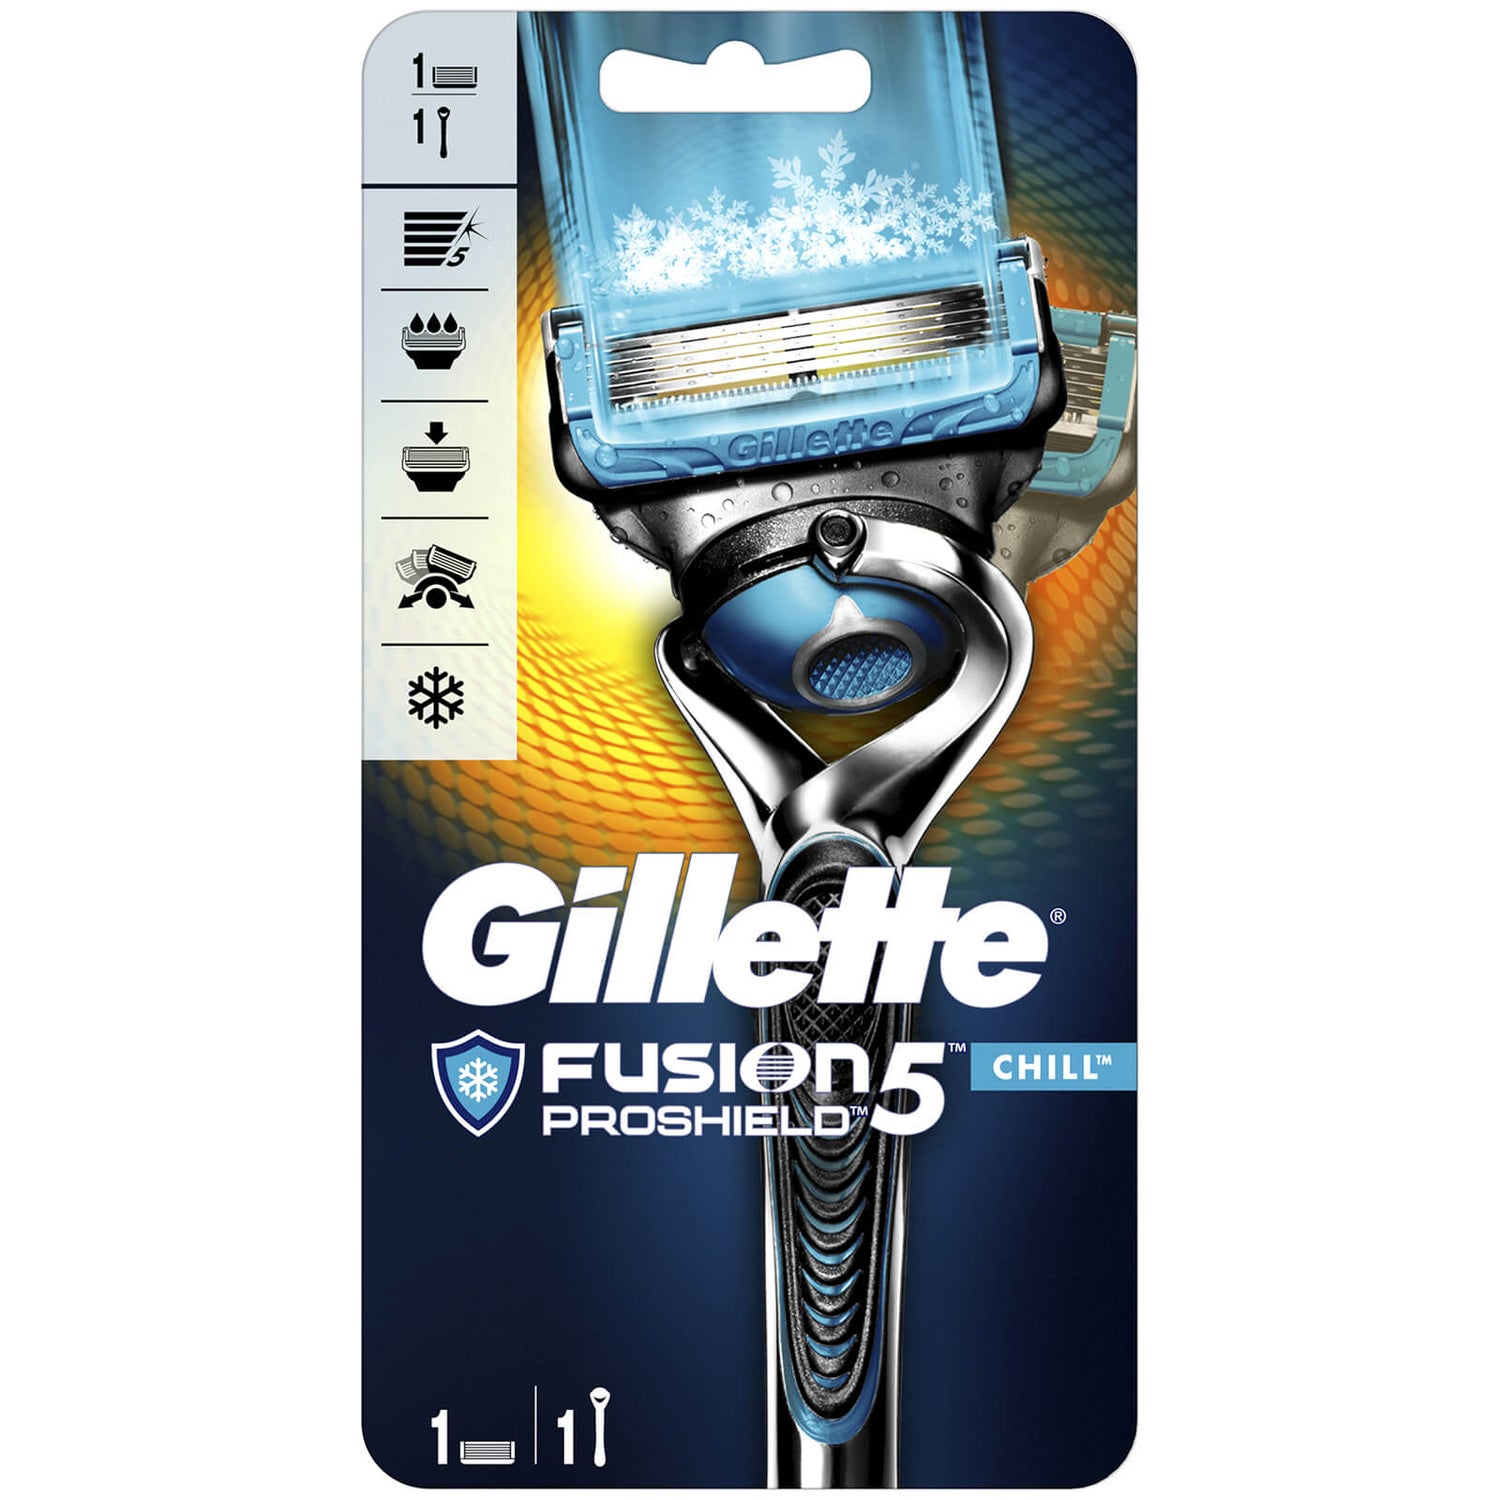 Gillette Fusion5 ProShield Chill Razor